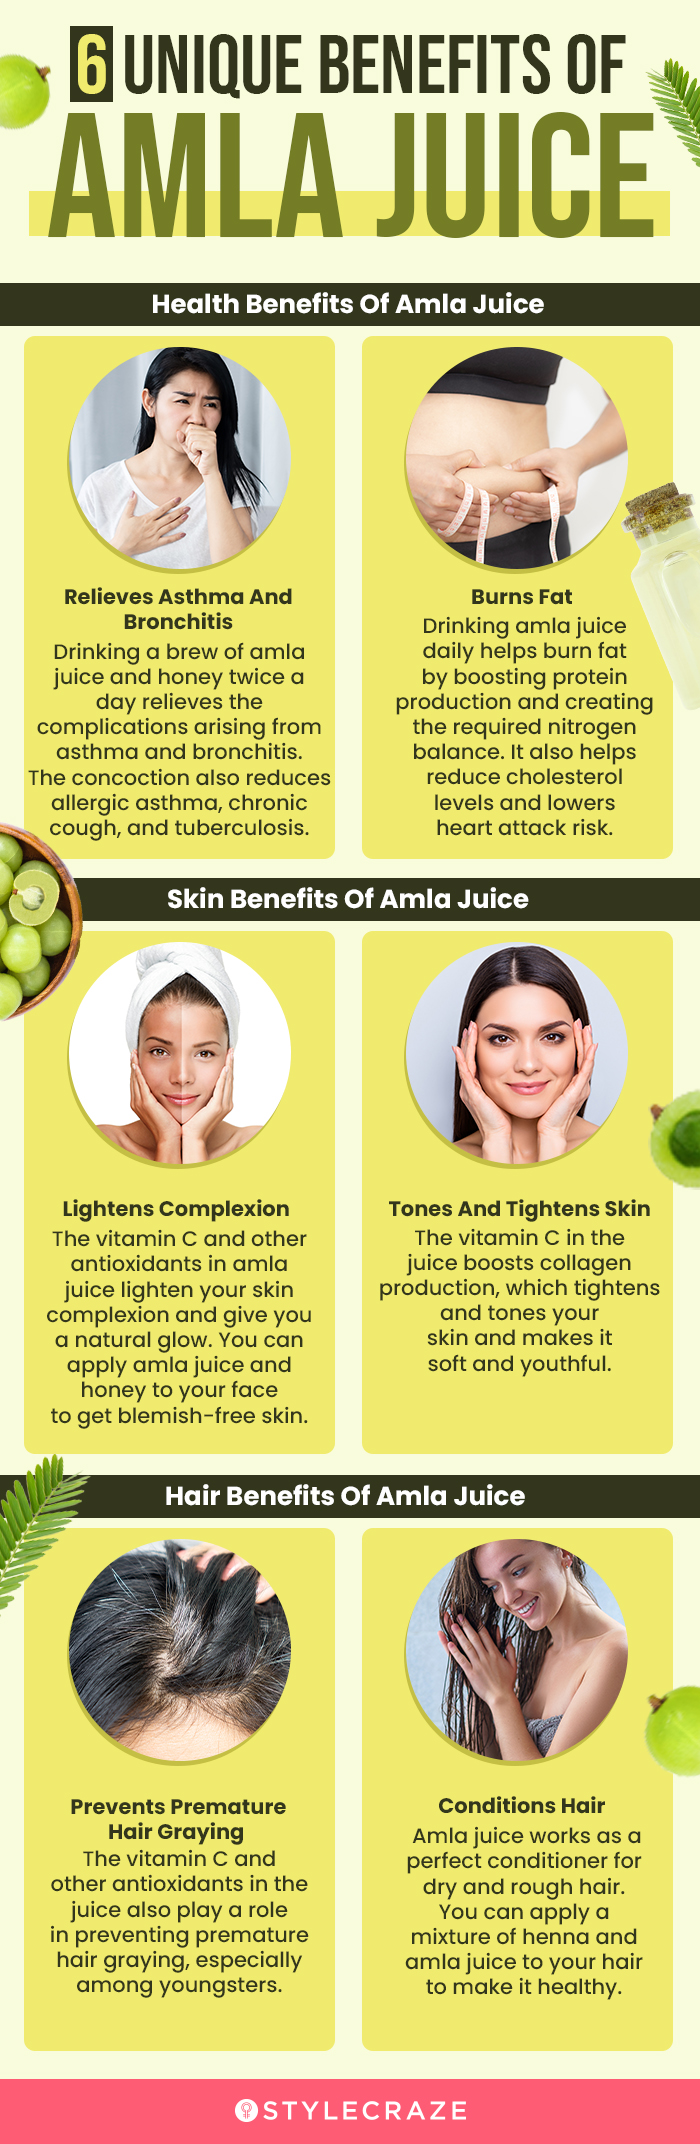 6 unique benefits of amla juice (infographic)